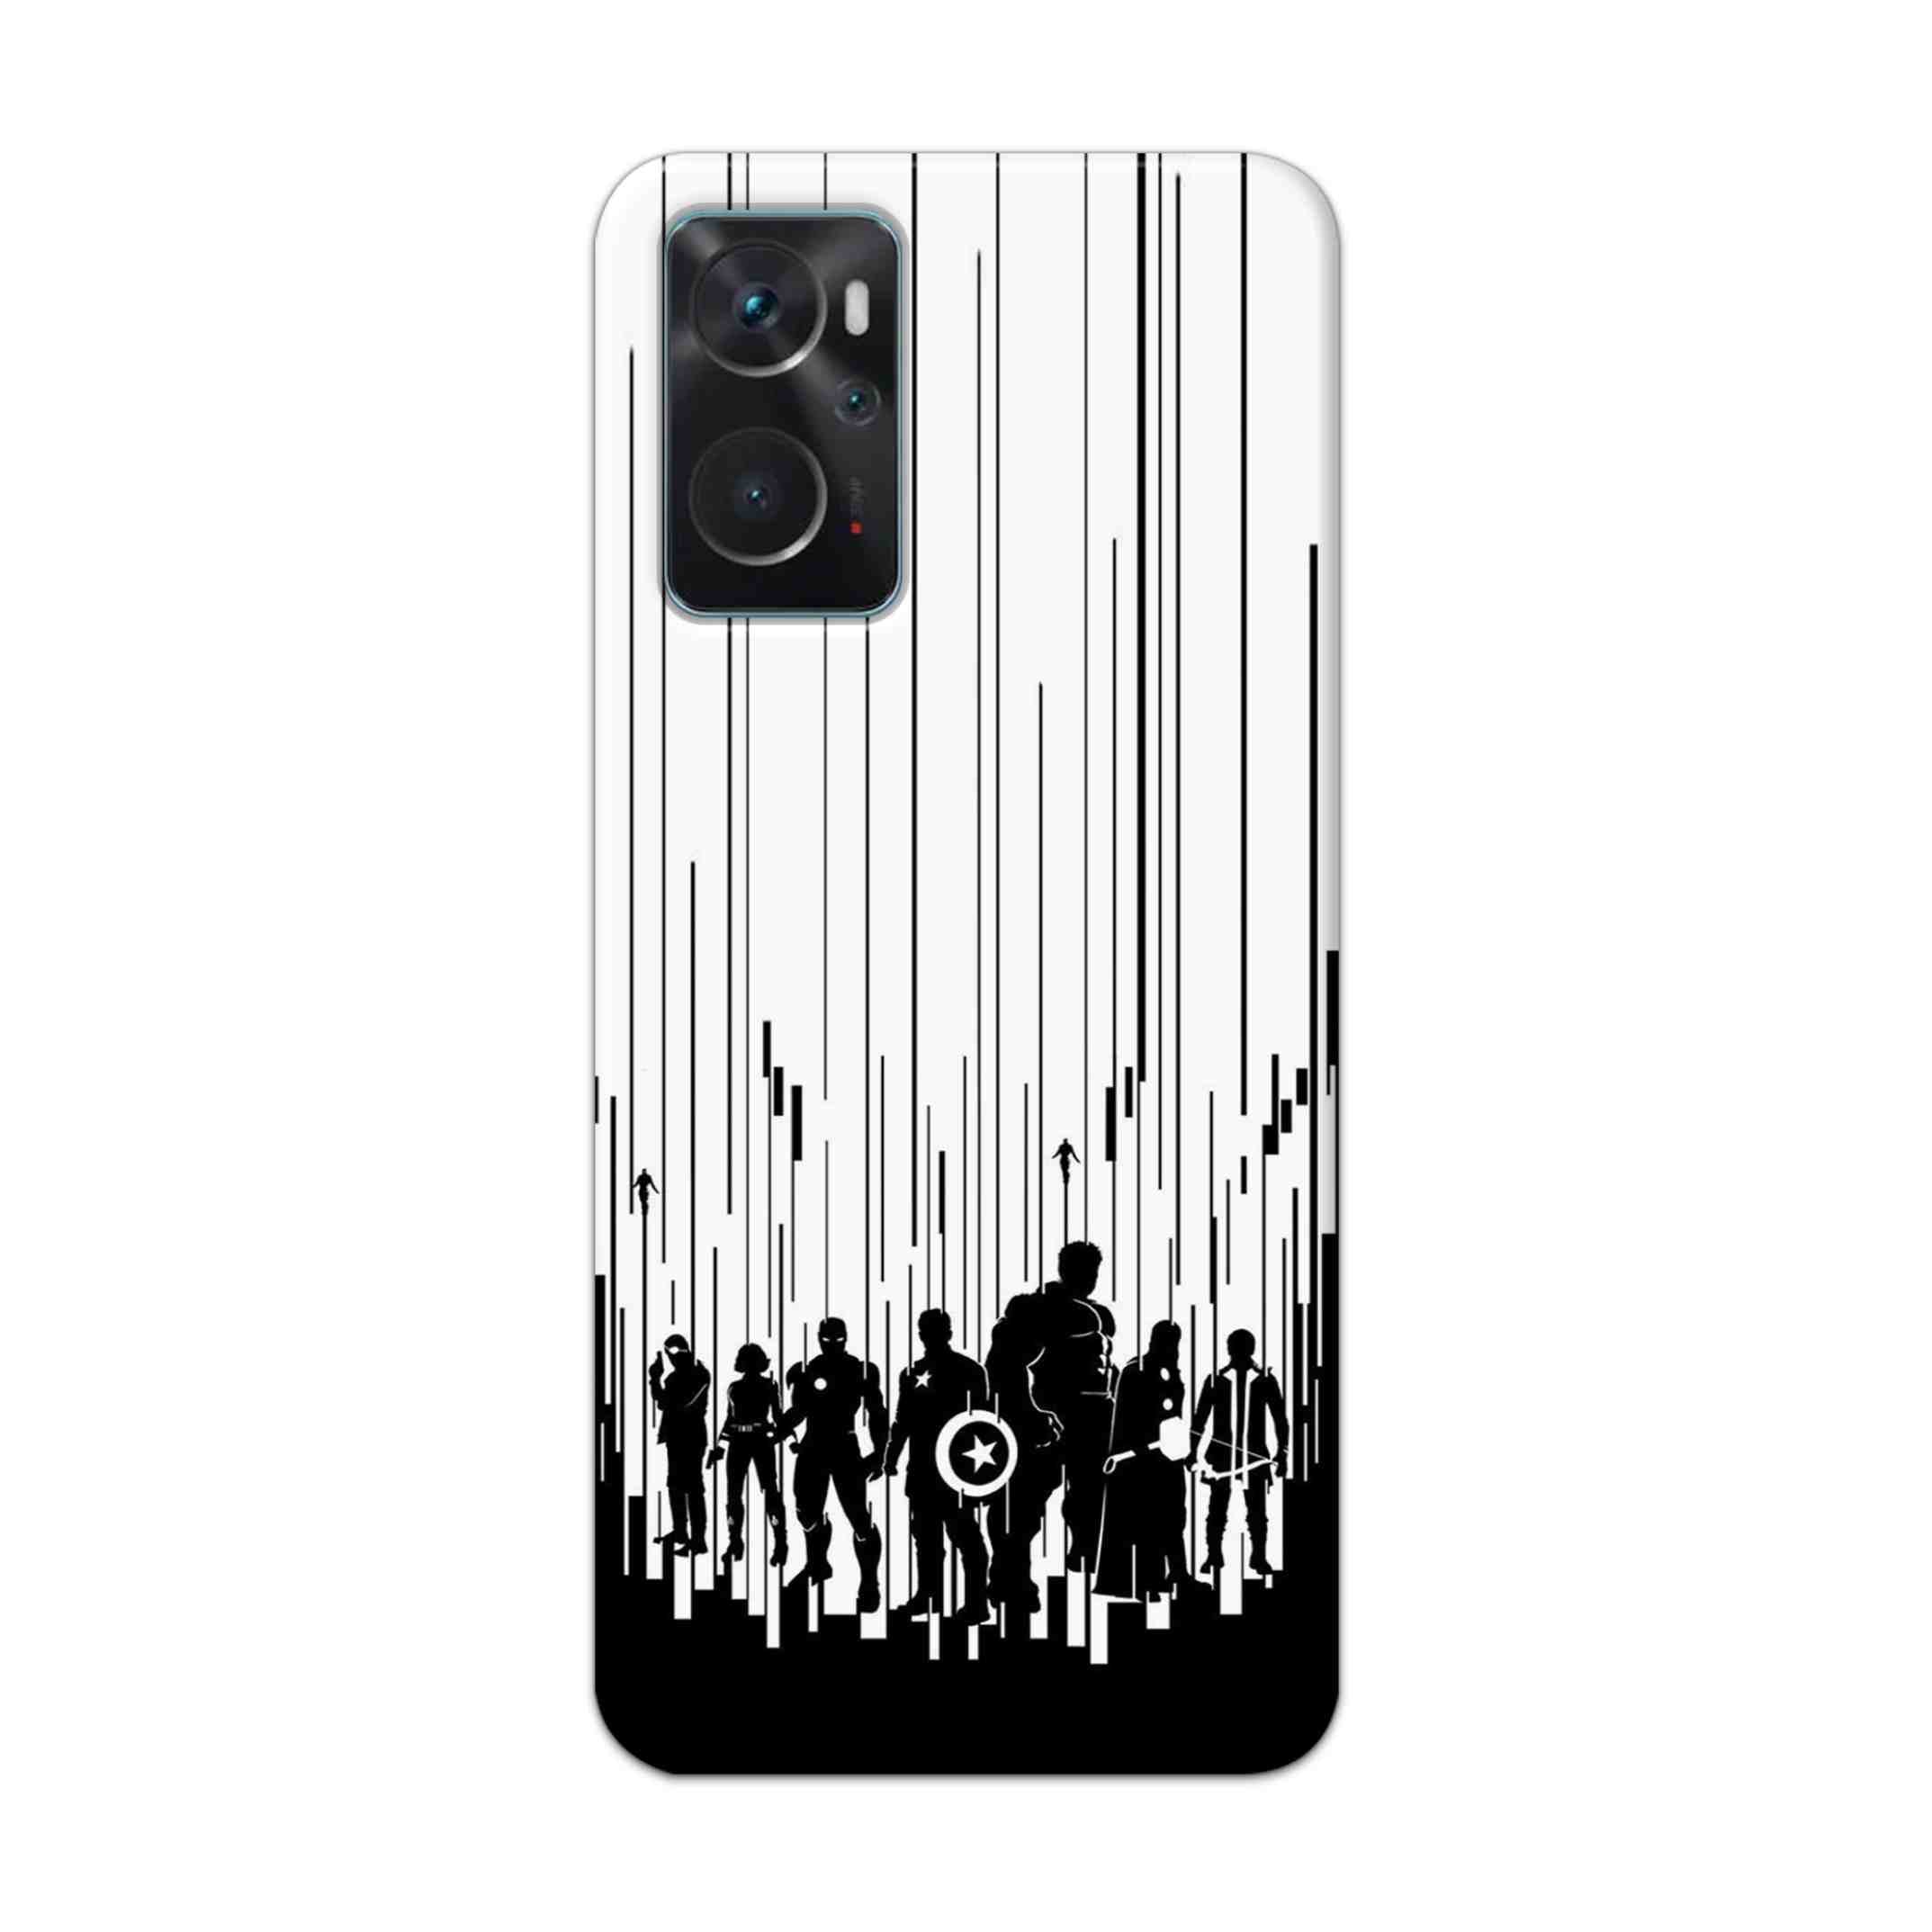 Buy Black And White Avengers Hard Back Mobile Phone Case Cover For Oppo K10 Online